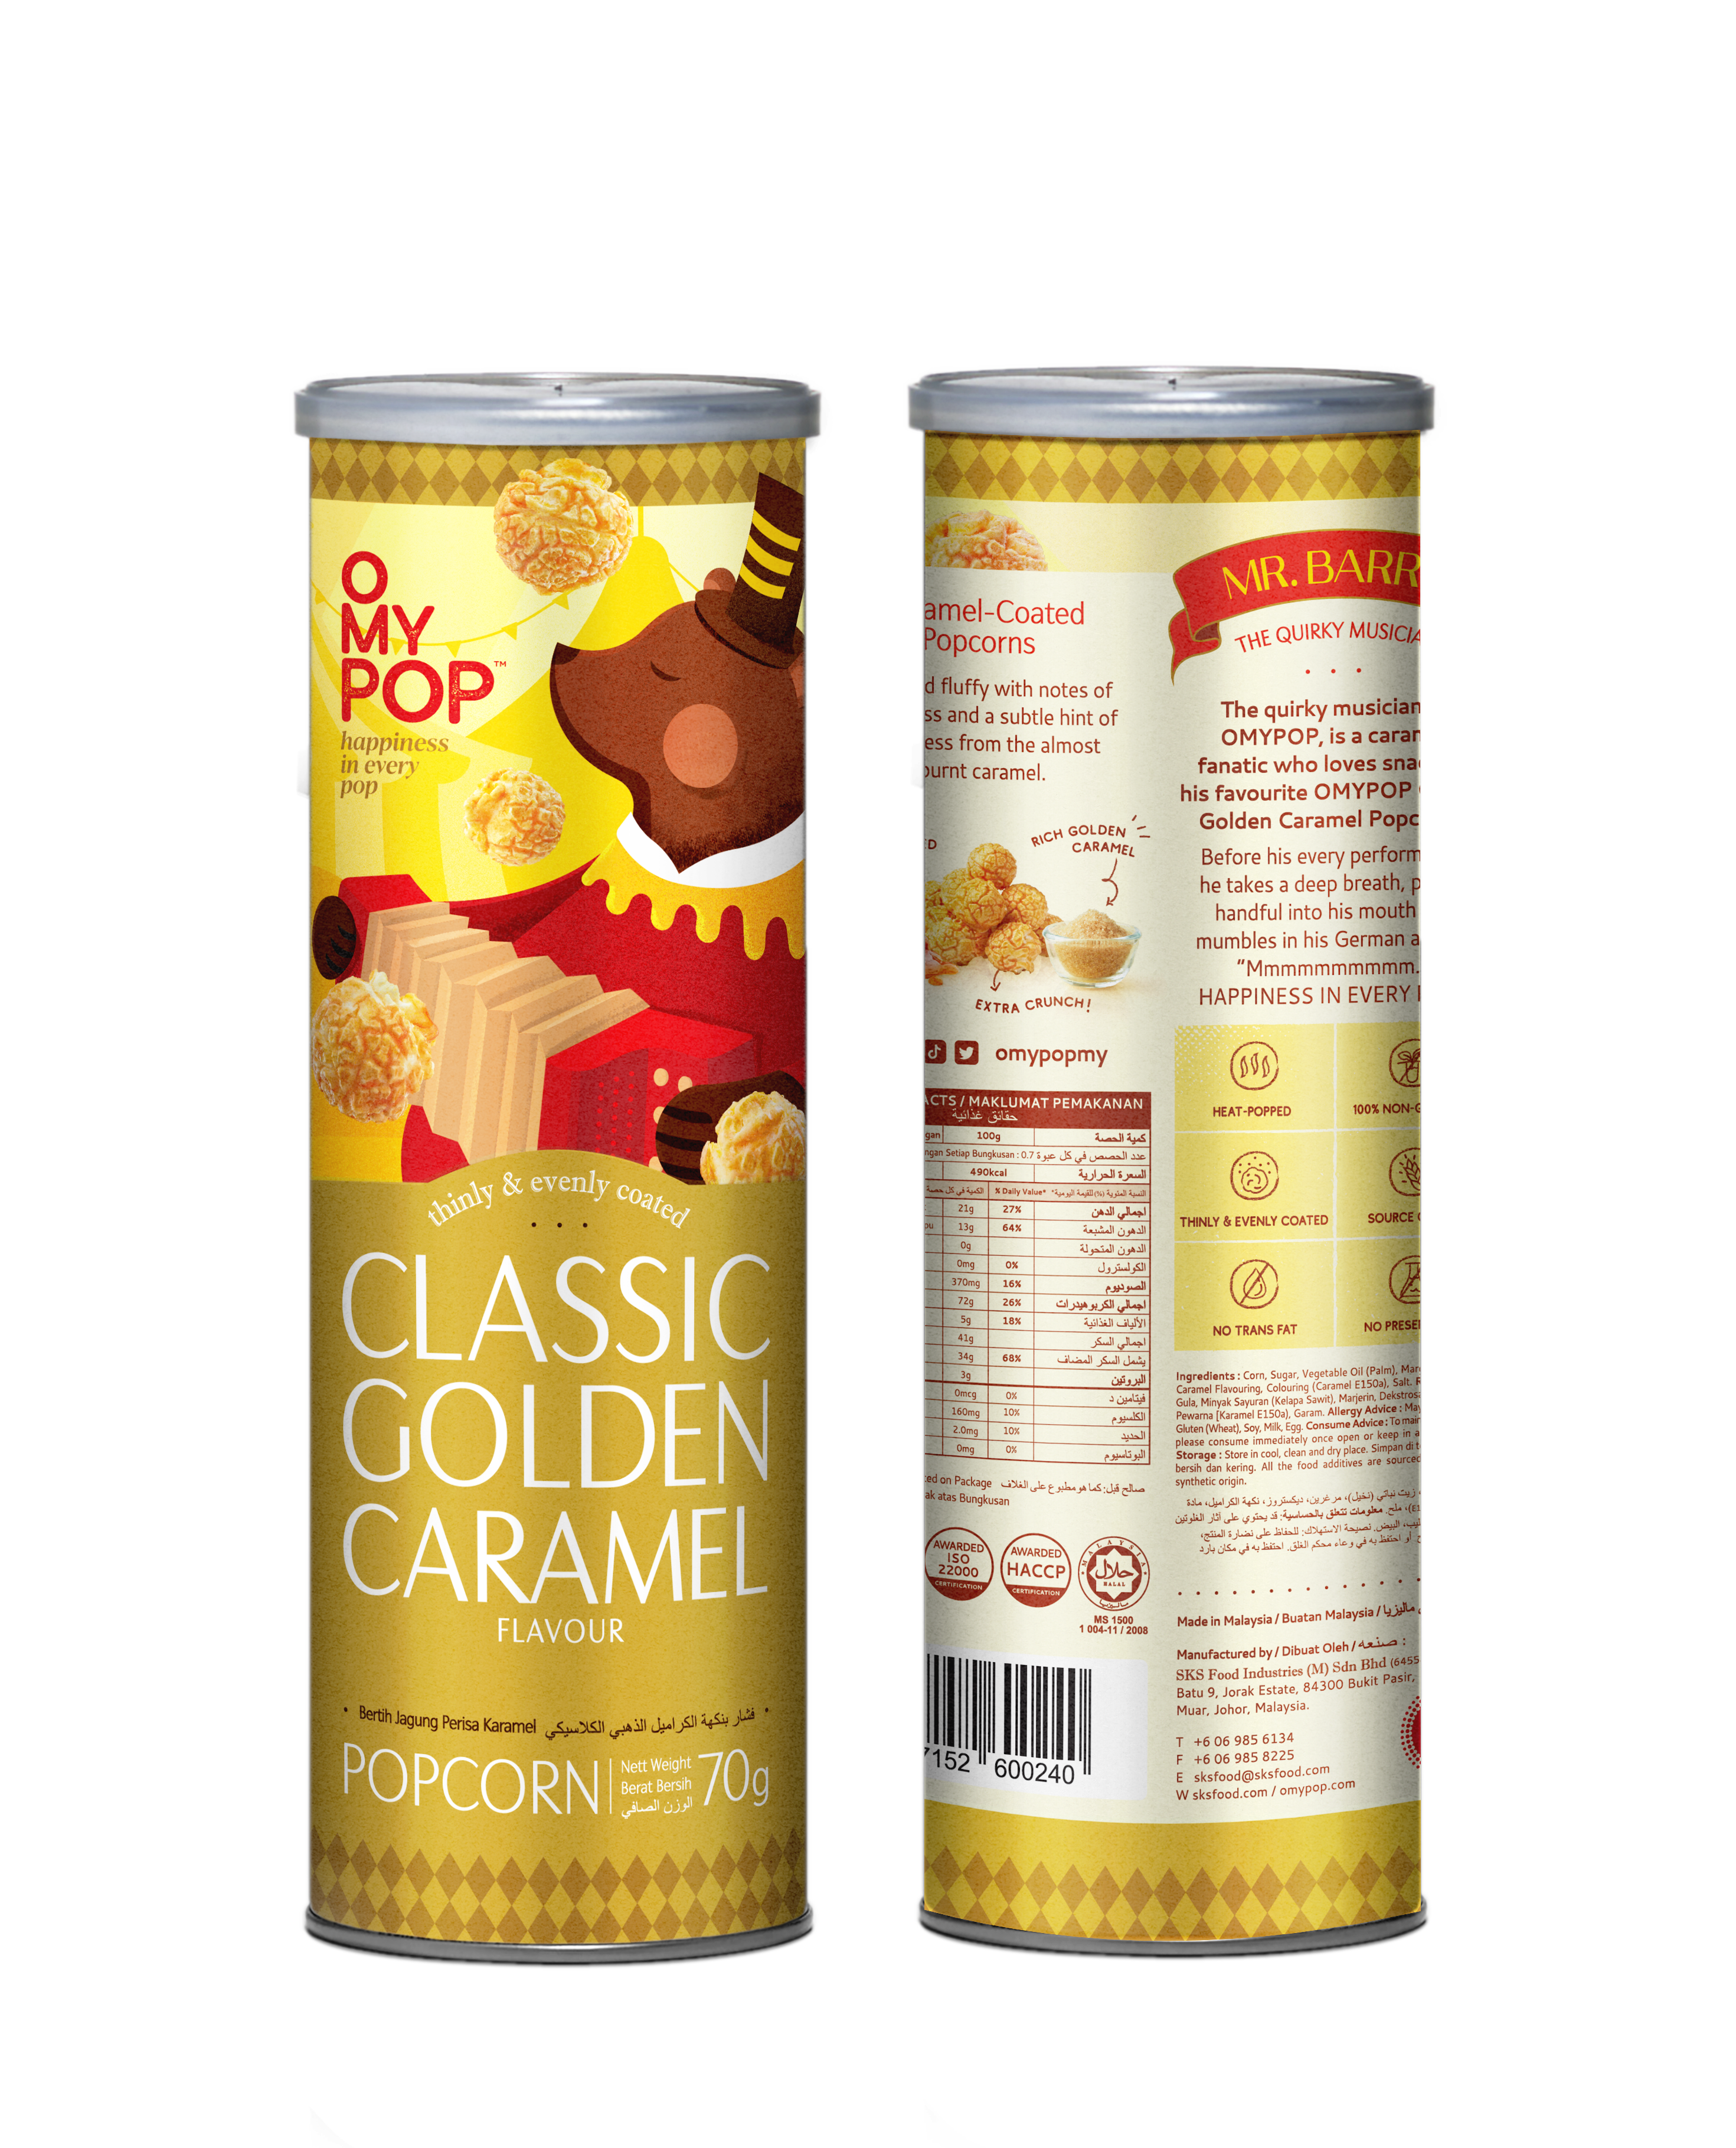 Карамельтэй Попкорн  70г; Classic Golden Caramel 70g; Классическая Золотая Карамель 70г